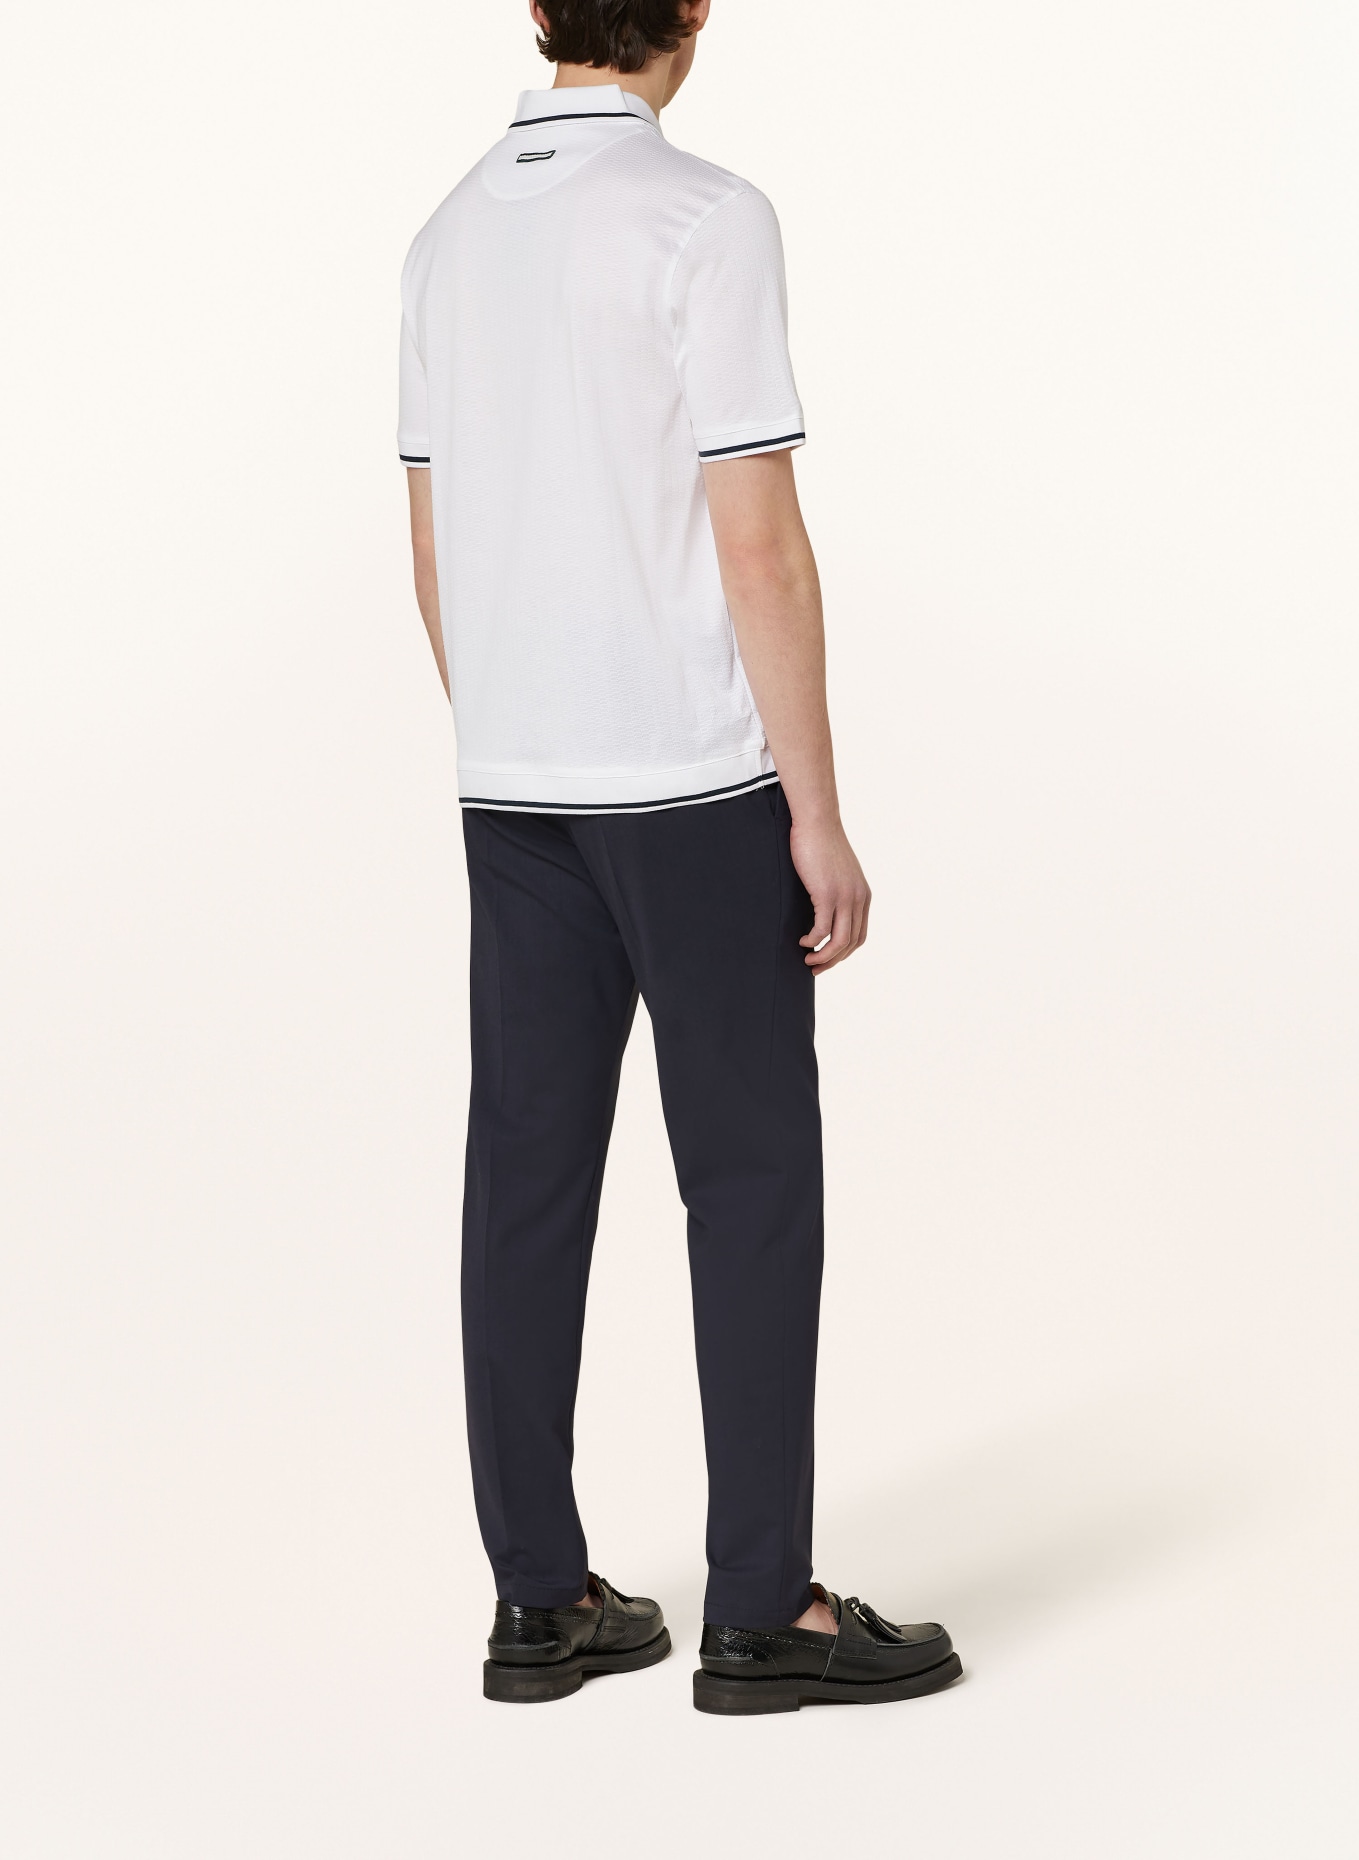 TED BAKER Piqué-Poloshirt ERWEN Regular Fit, Farbe: WEISS/ SCHWARZ (Bild 3)